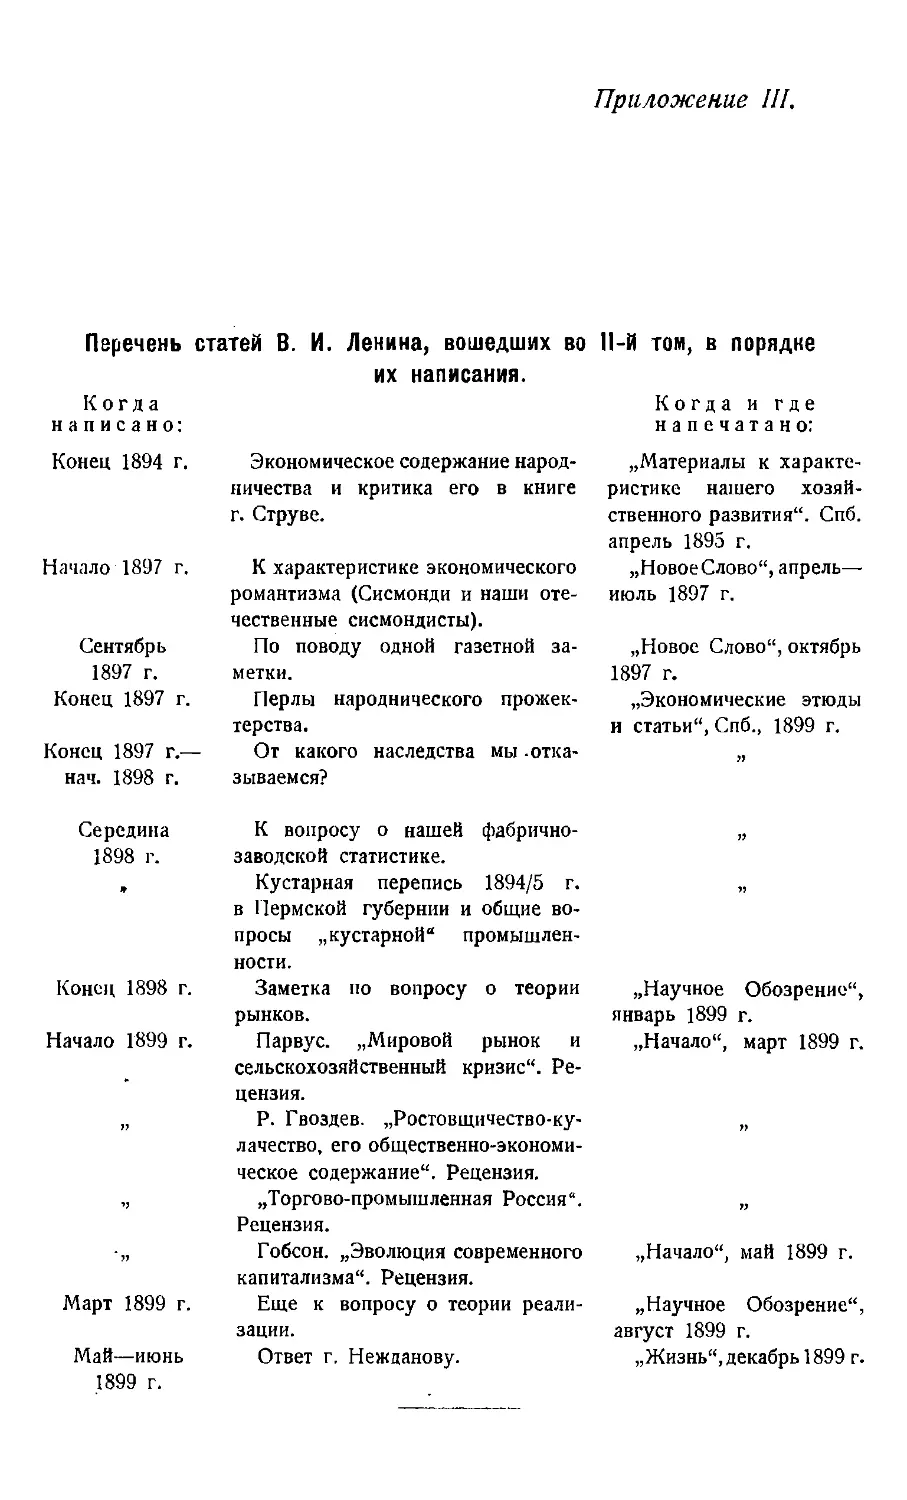 III. Перечень статей В. И. Ленина, вошедших во II том в порядке их написания